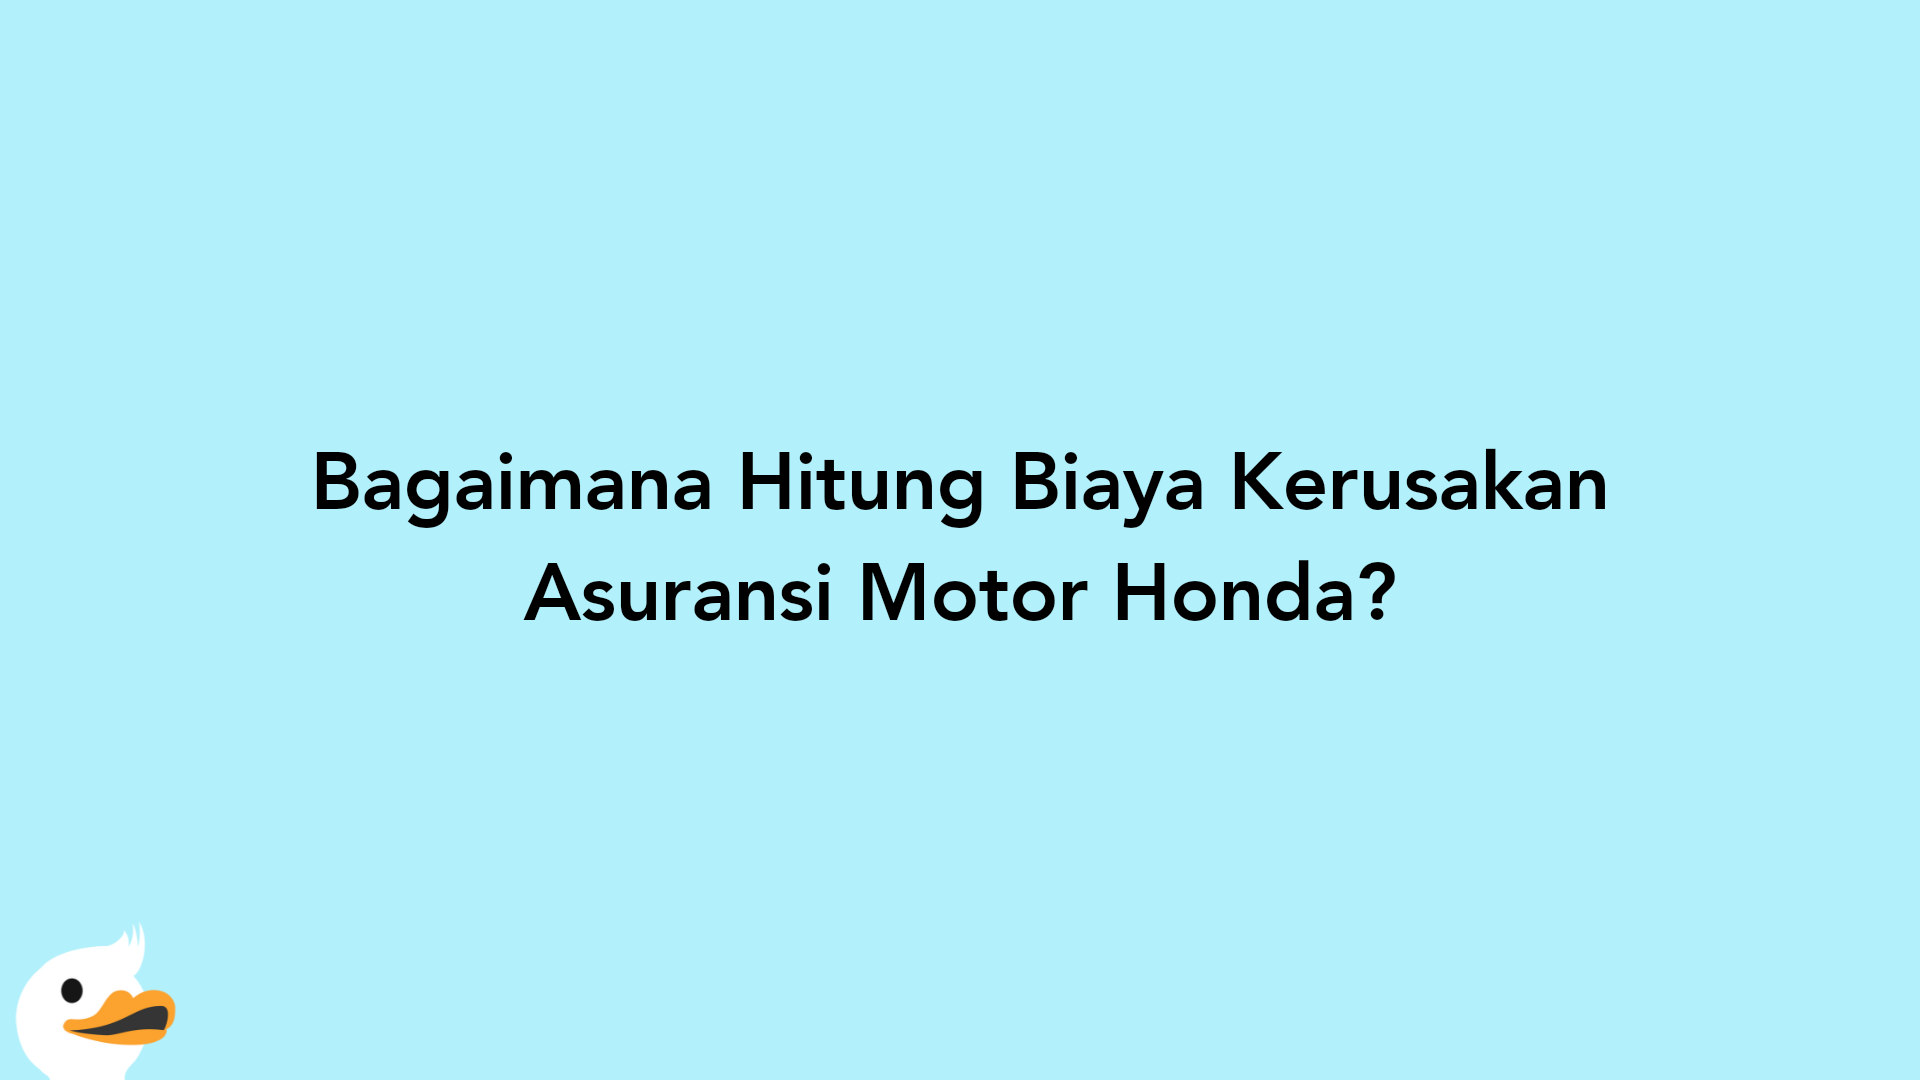 Bagaimana Hitung Biaya Kerusakan Asuransi Motor Honda?